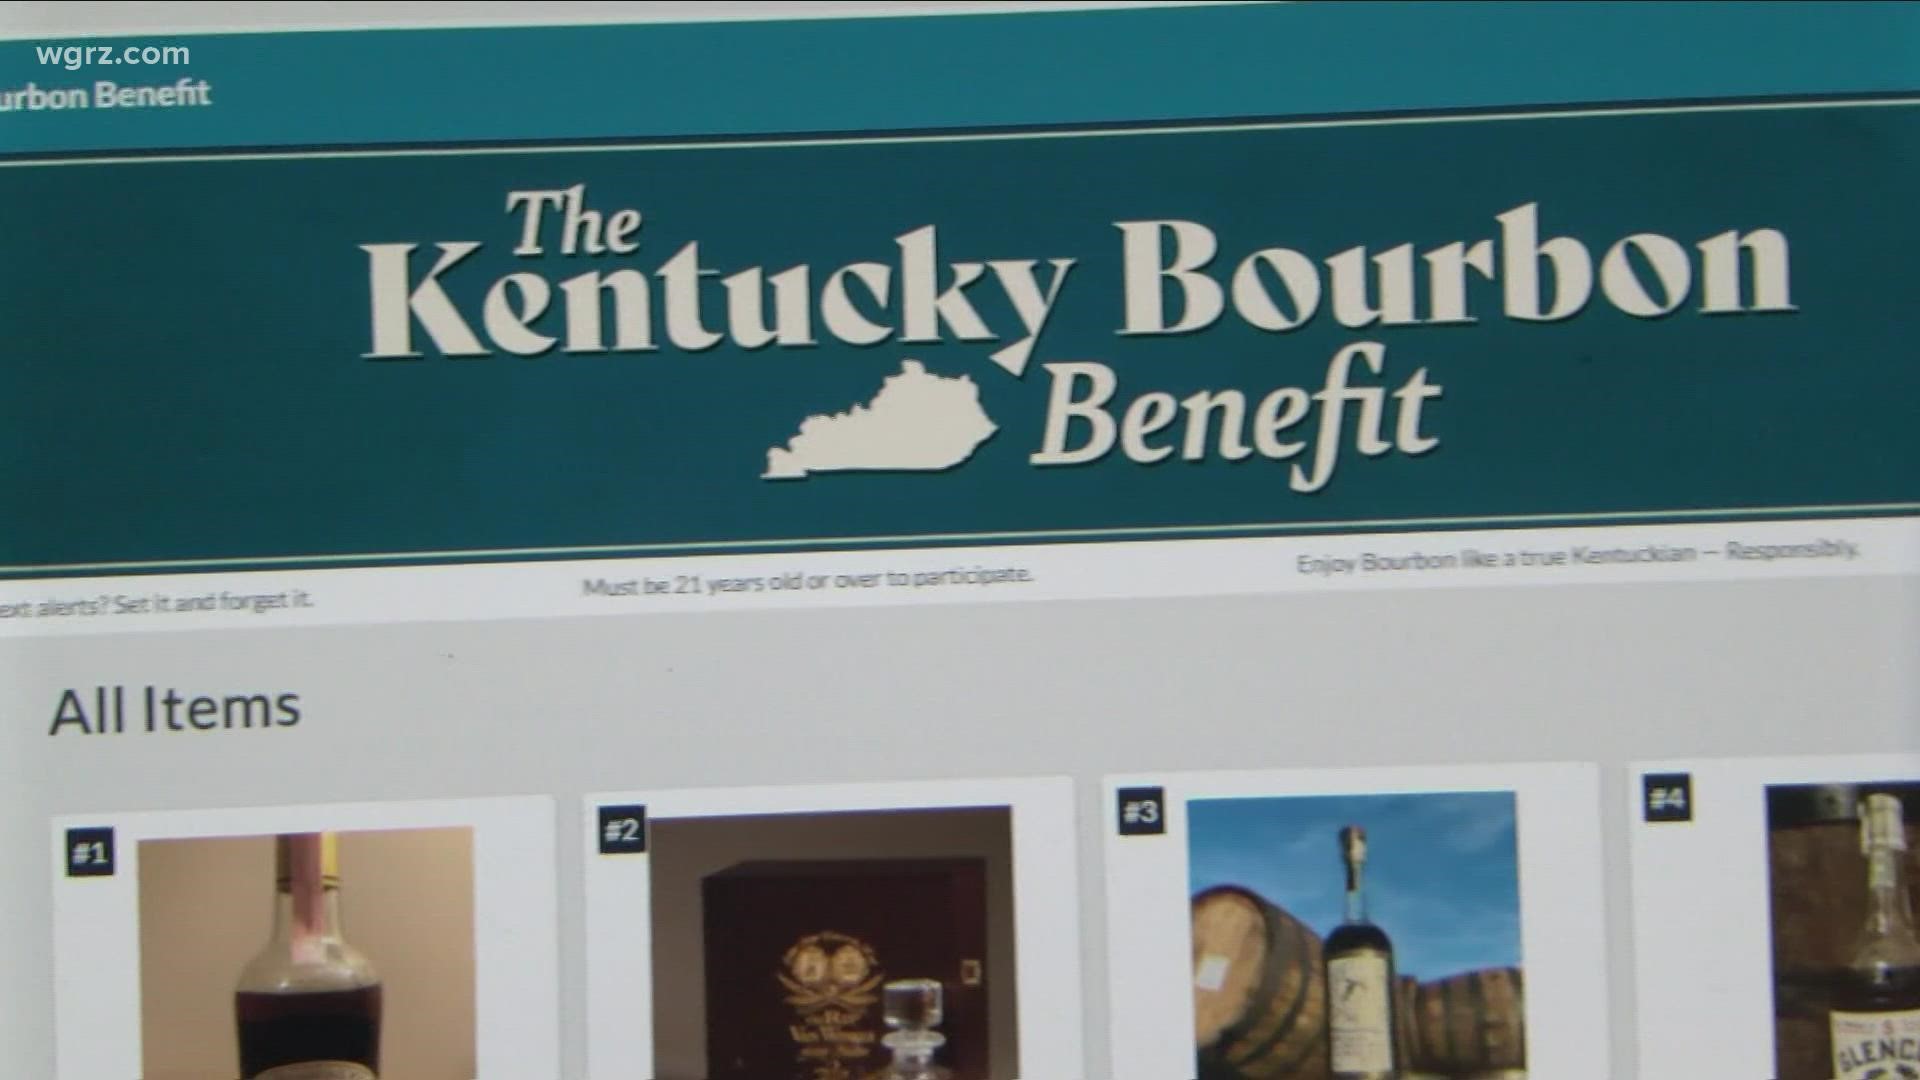 Bourbon online auction benefit for relief |